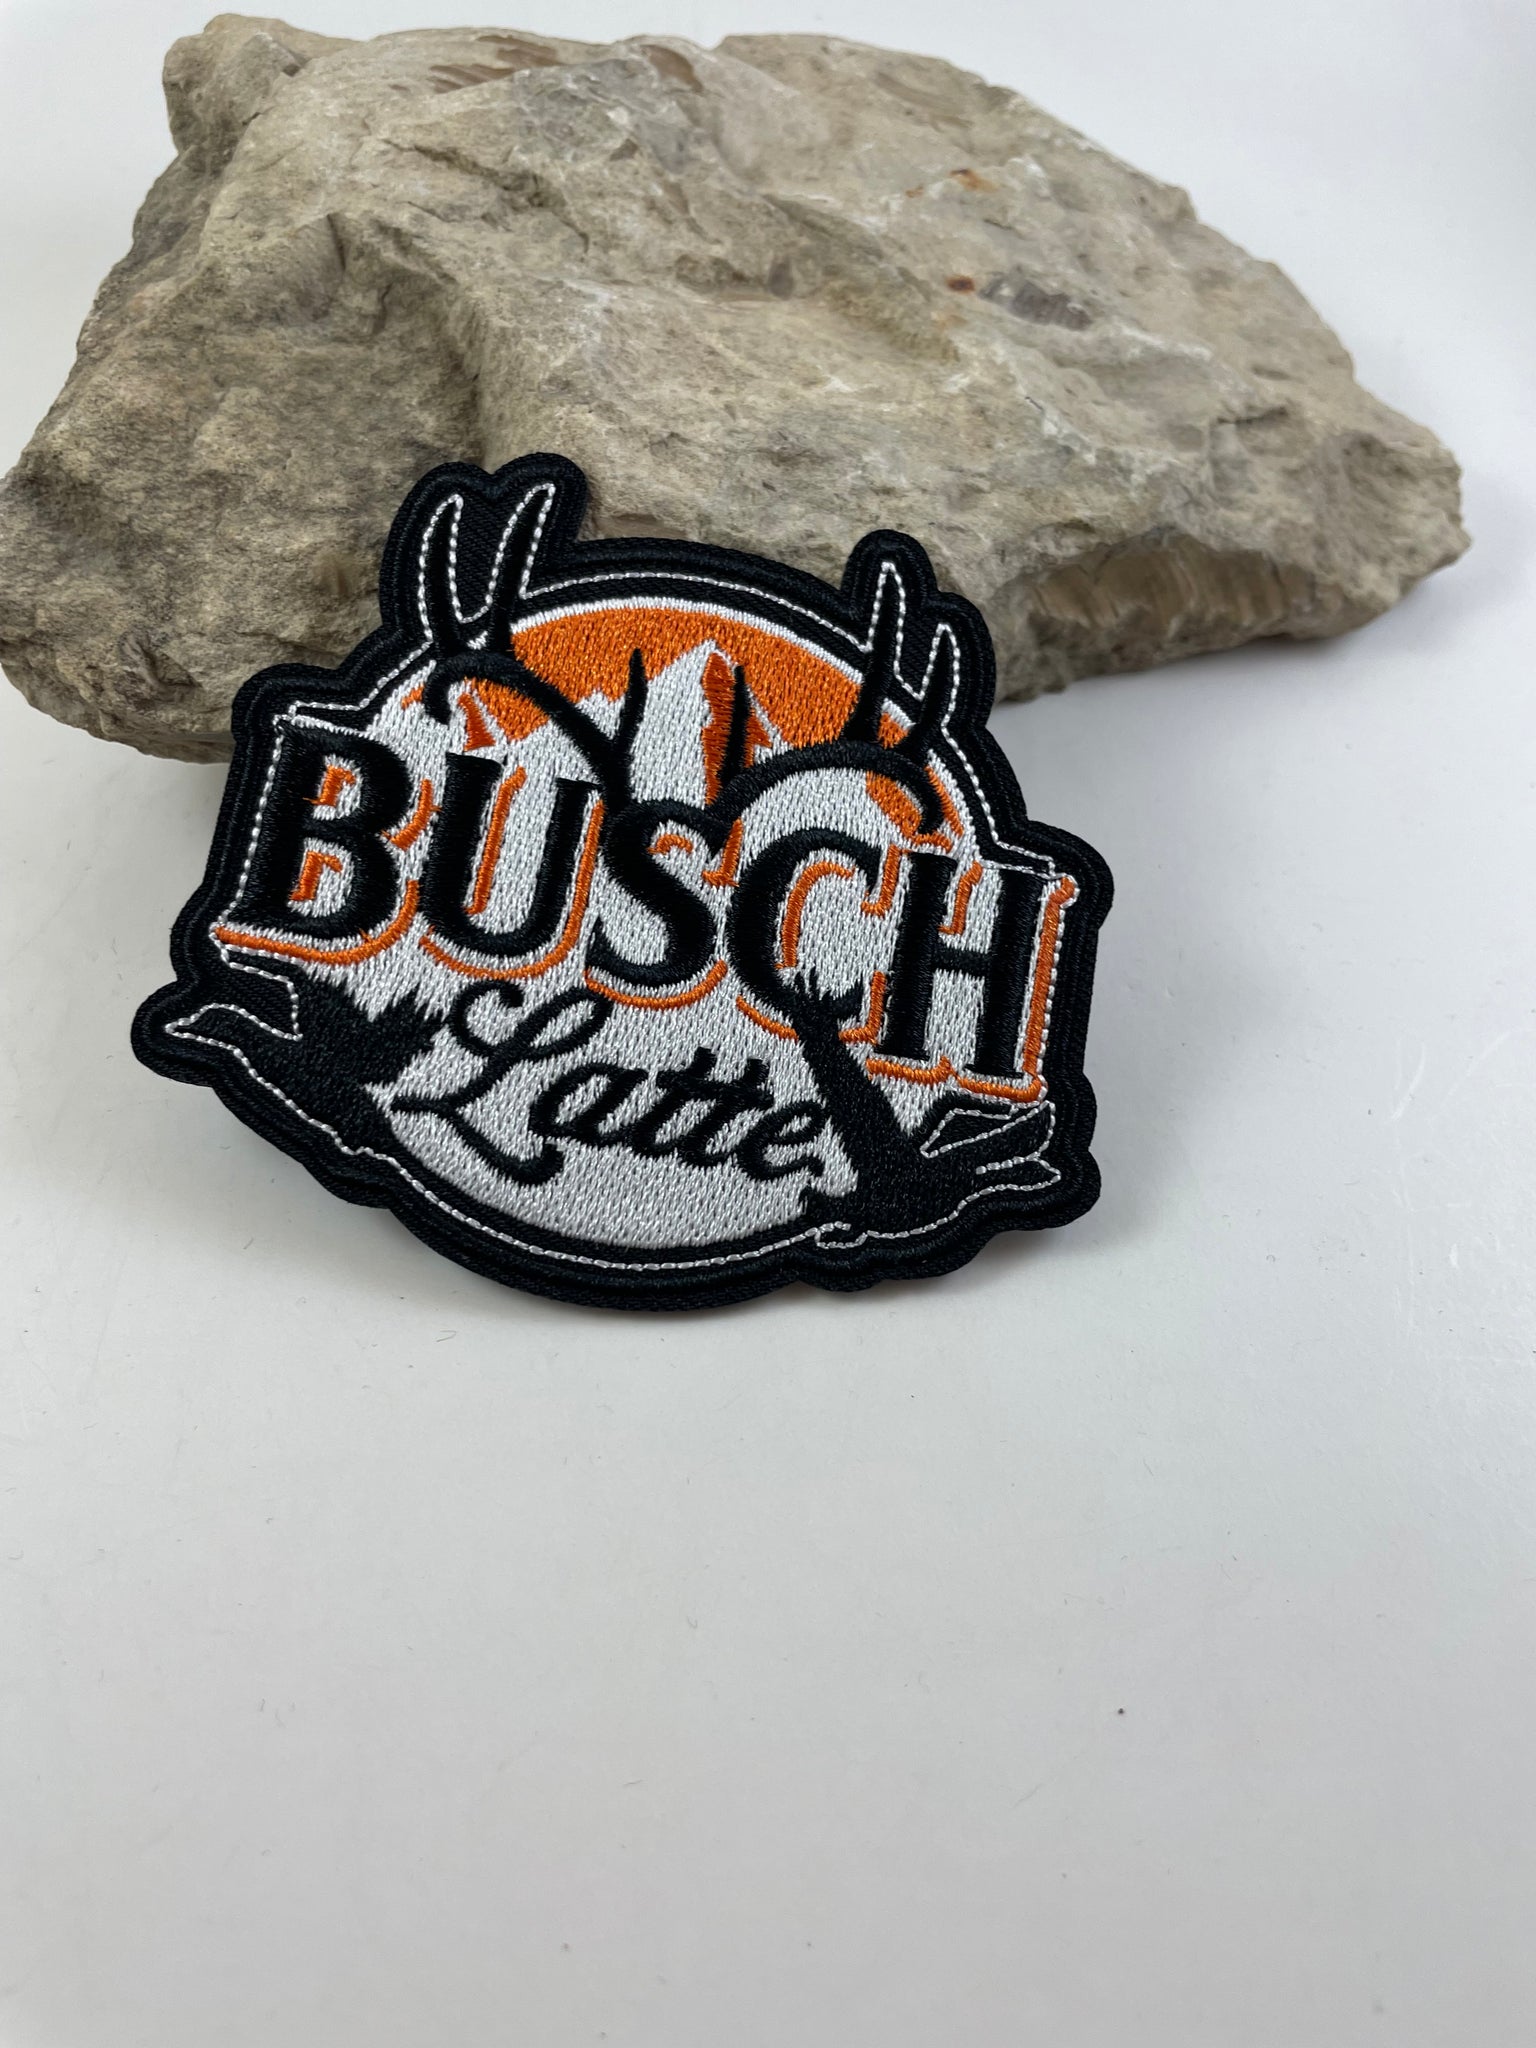 Busch Latte Patch